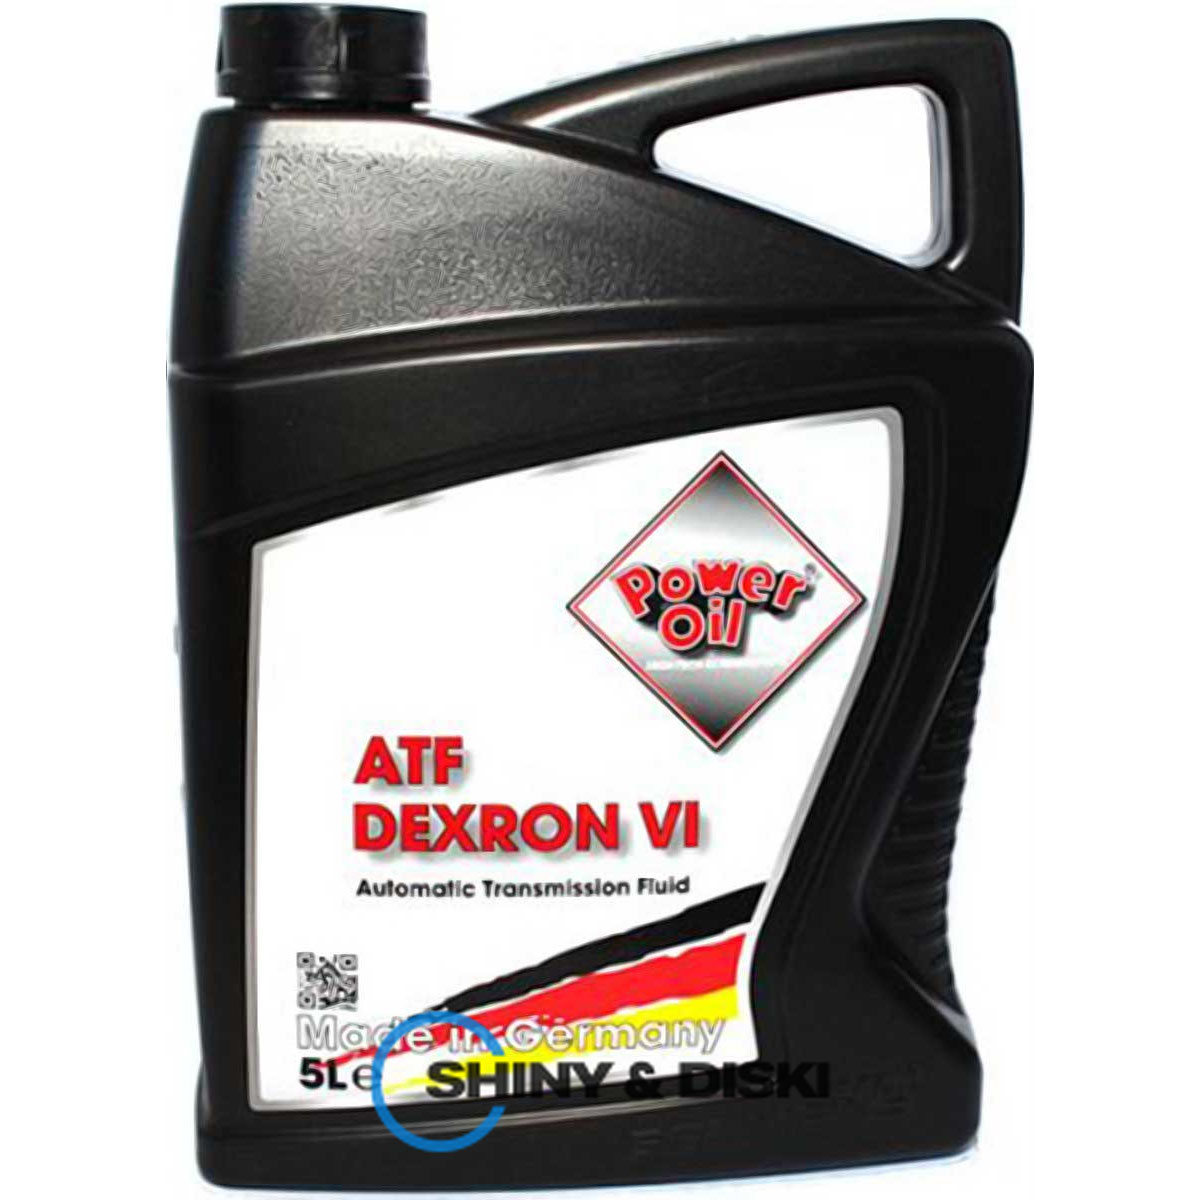 power oil atf dexron vi (5л)